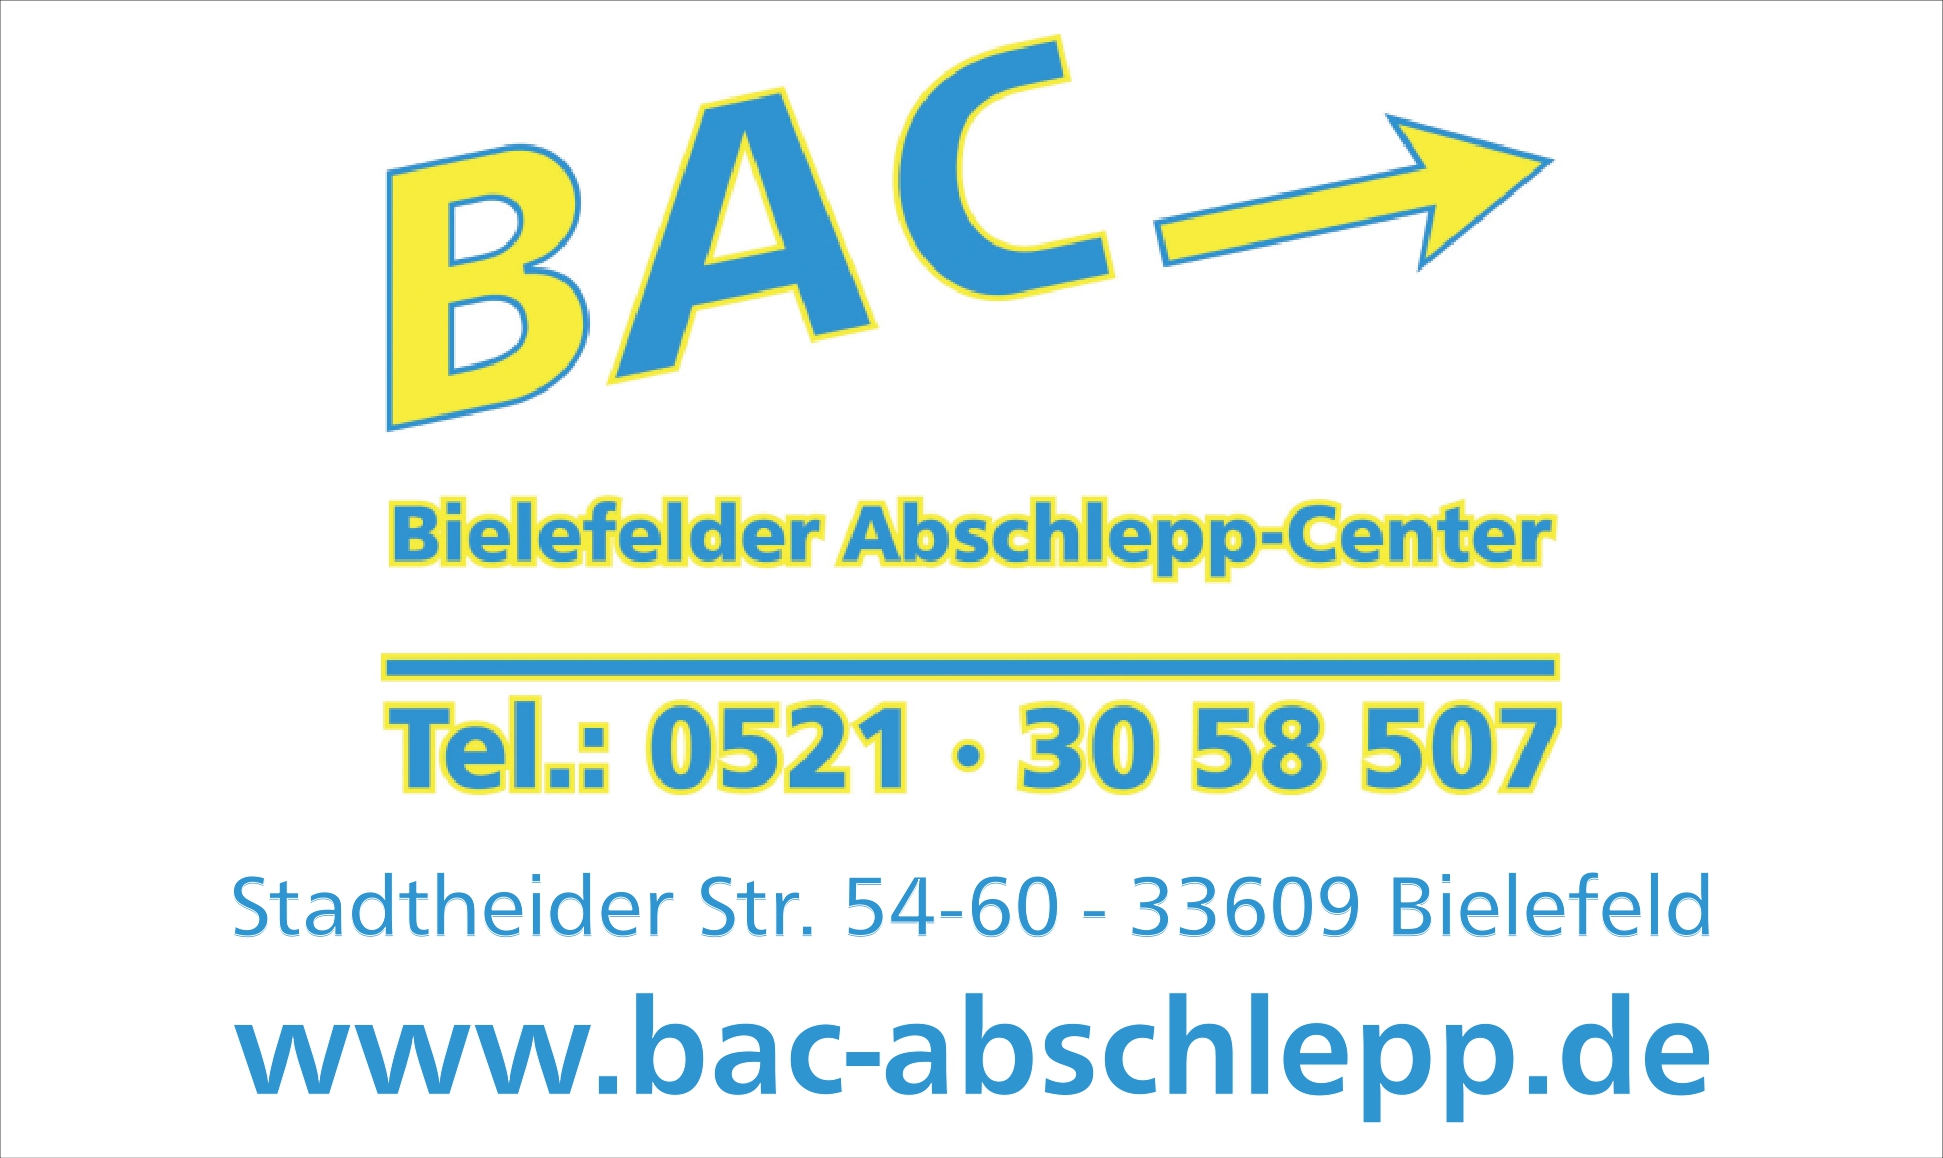 Bielefelder Abschlepp-Center